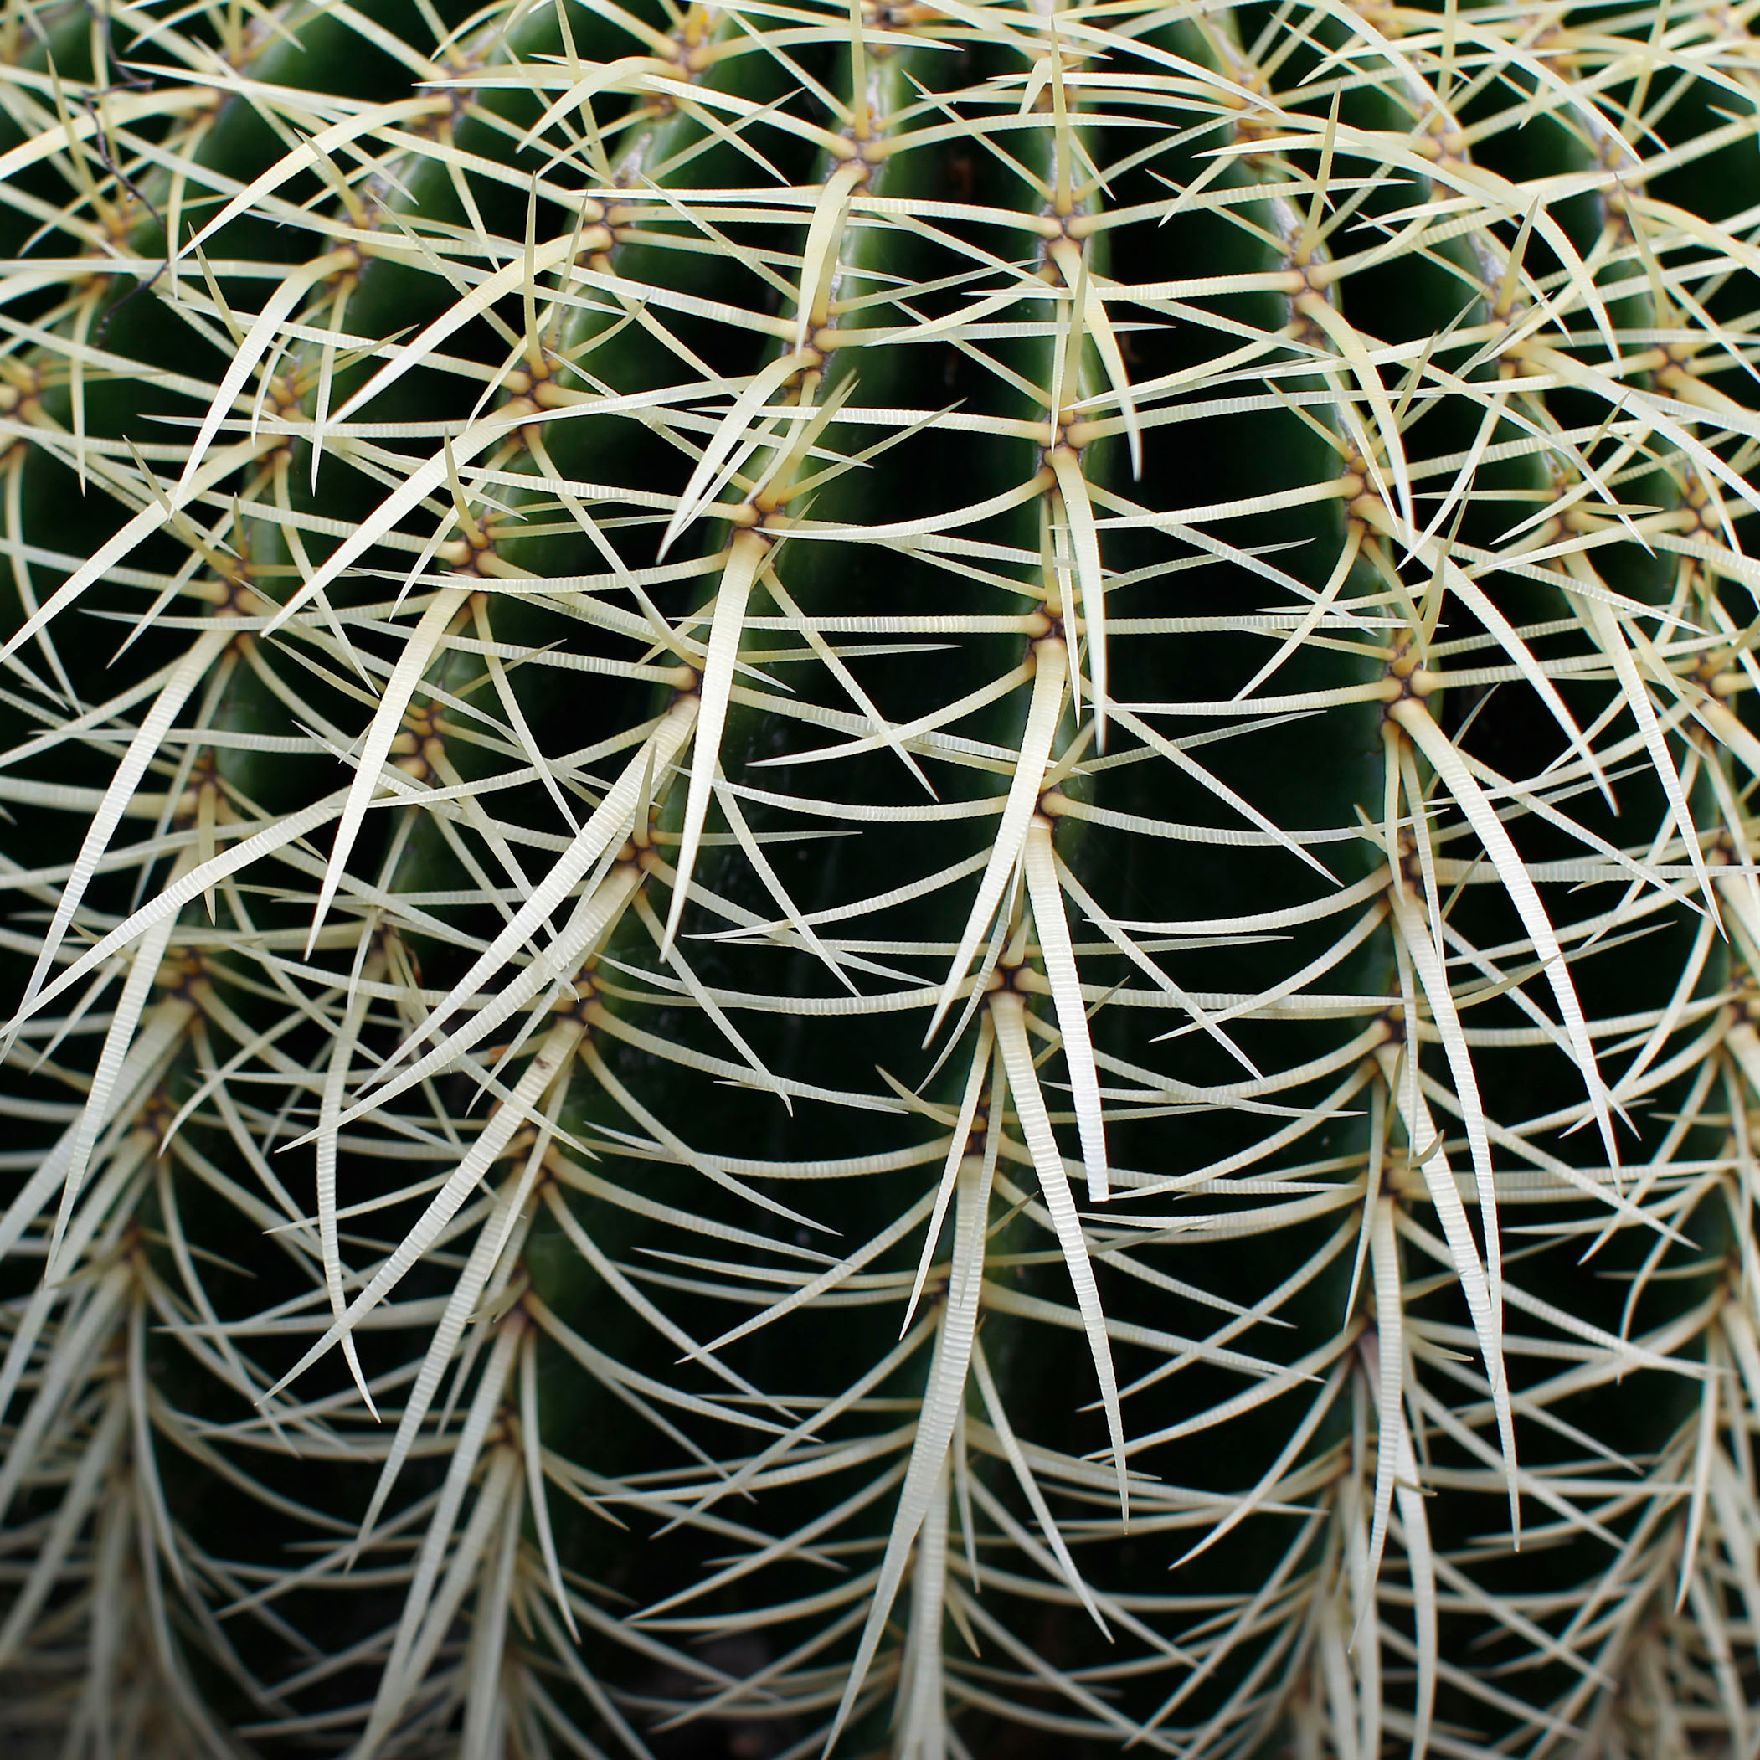 Eine Kaktuspflanze im botanischen Garten. Schlagworte: Natur, Pflanze, Stachel